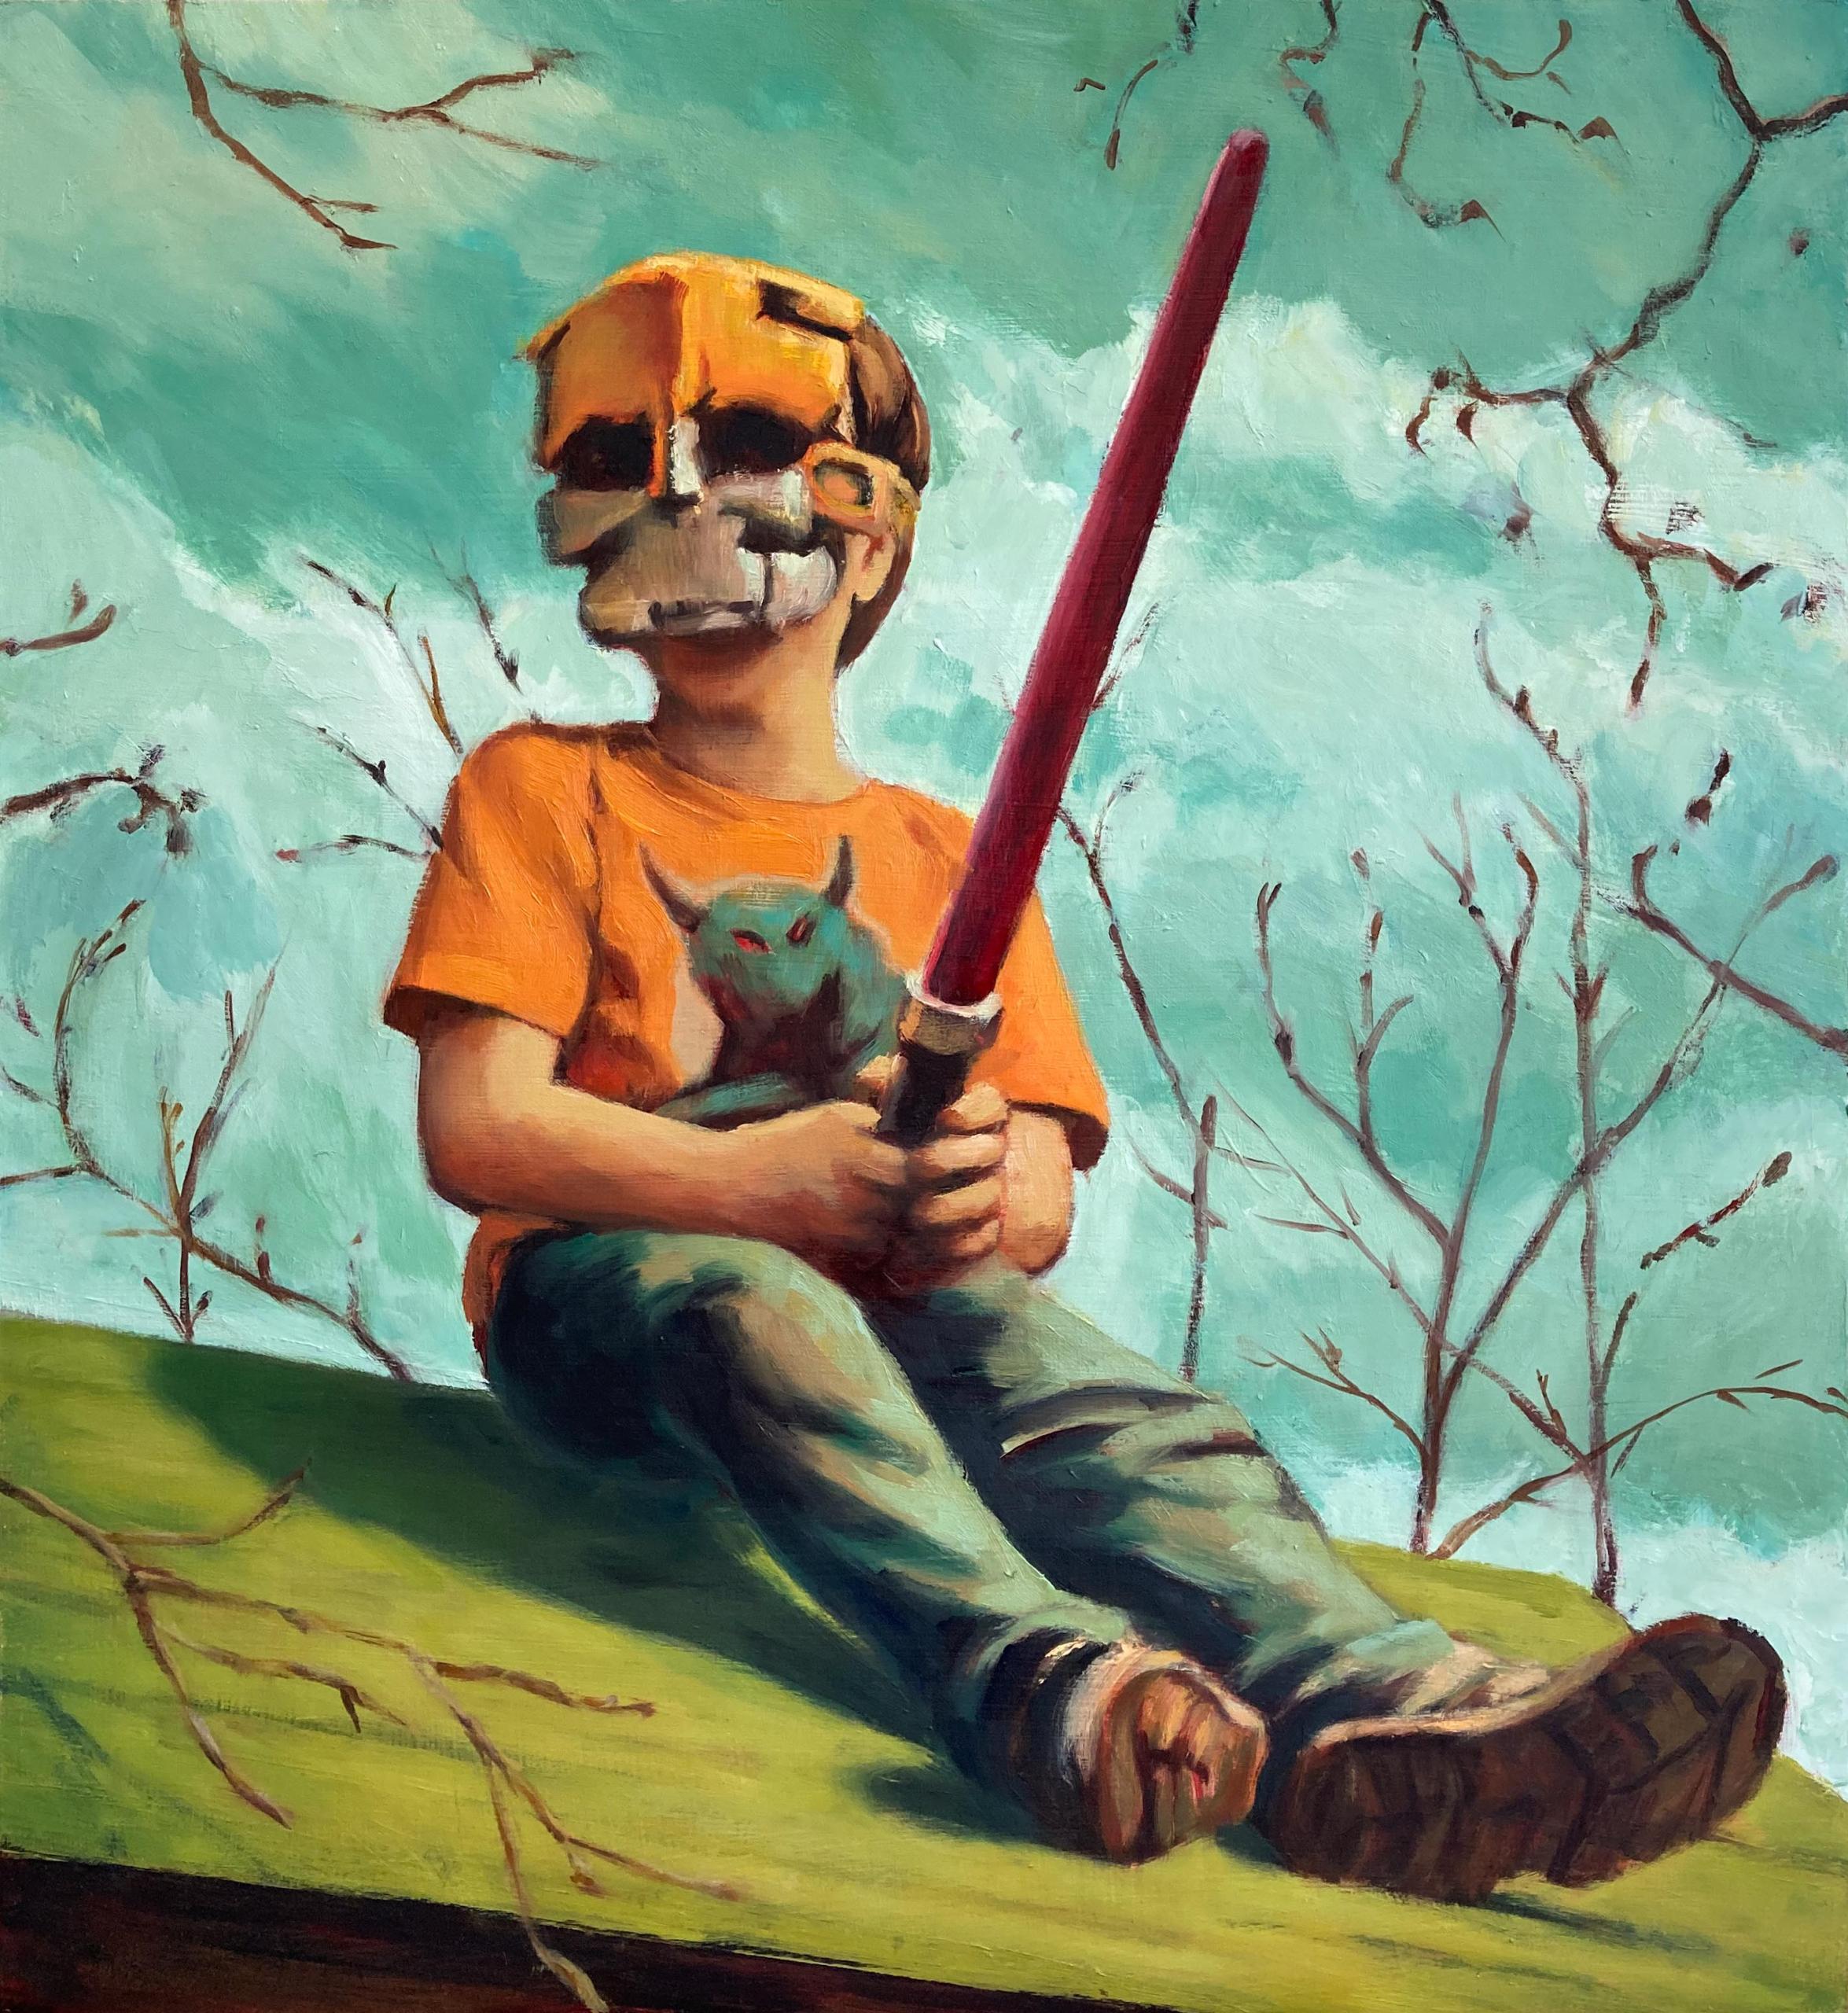 Ein Gemälde des Künstlers Benjy Barnhart, auf dem ein kleienr Junge mit Tigermaske auf einem Hausdach sitzt und ein Laserschwert in der Hand hält.